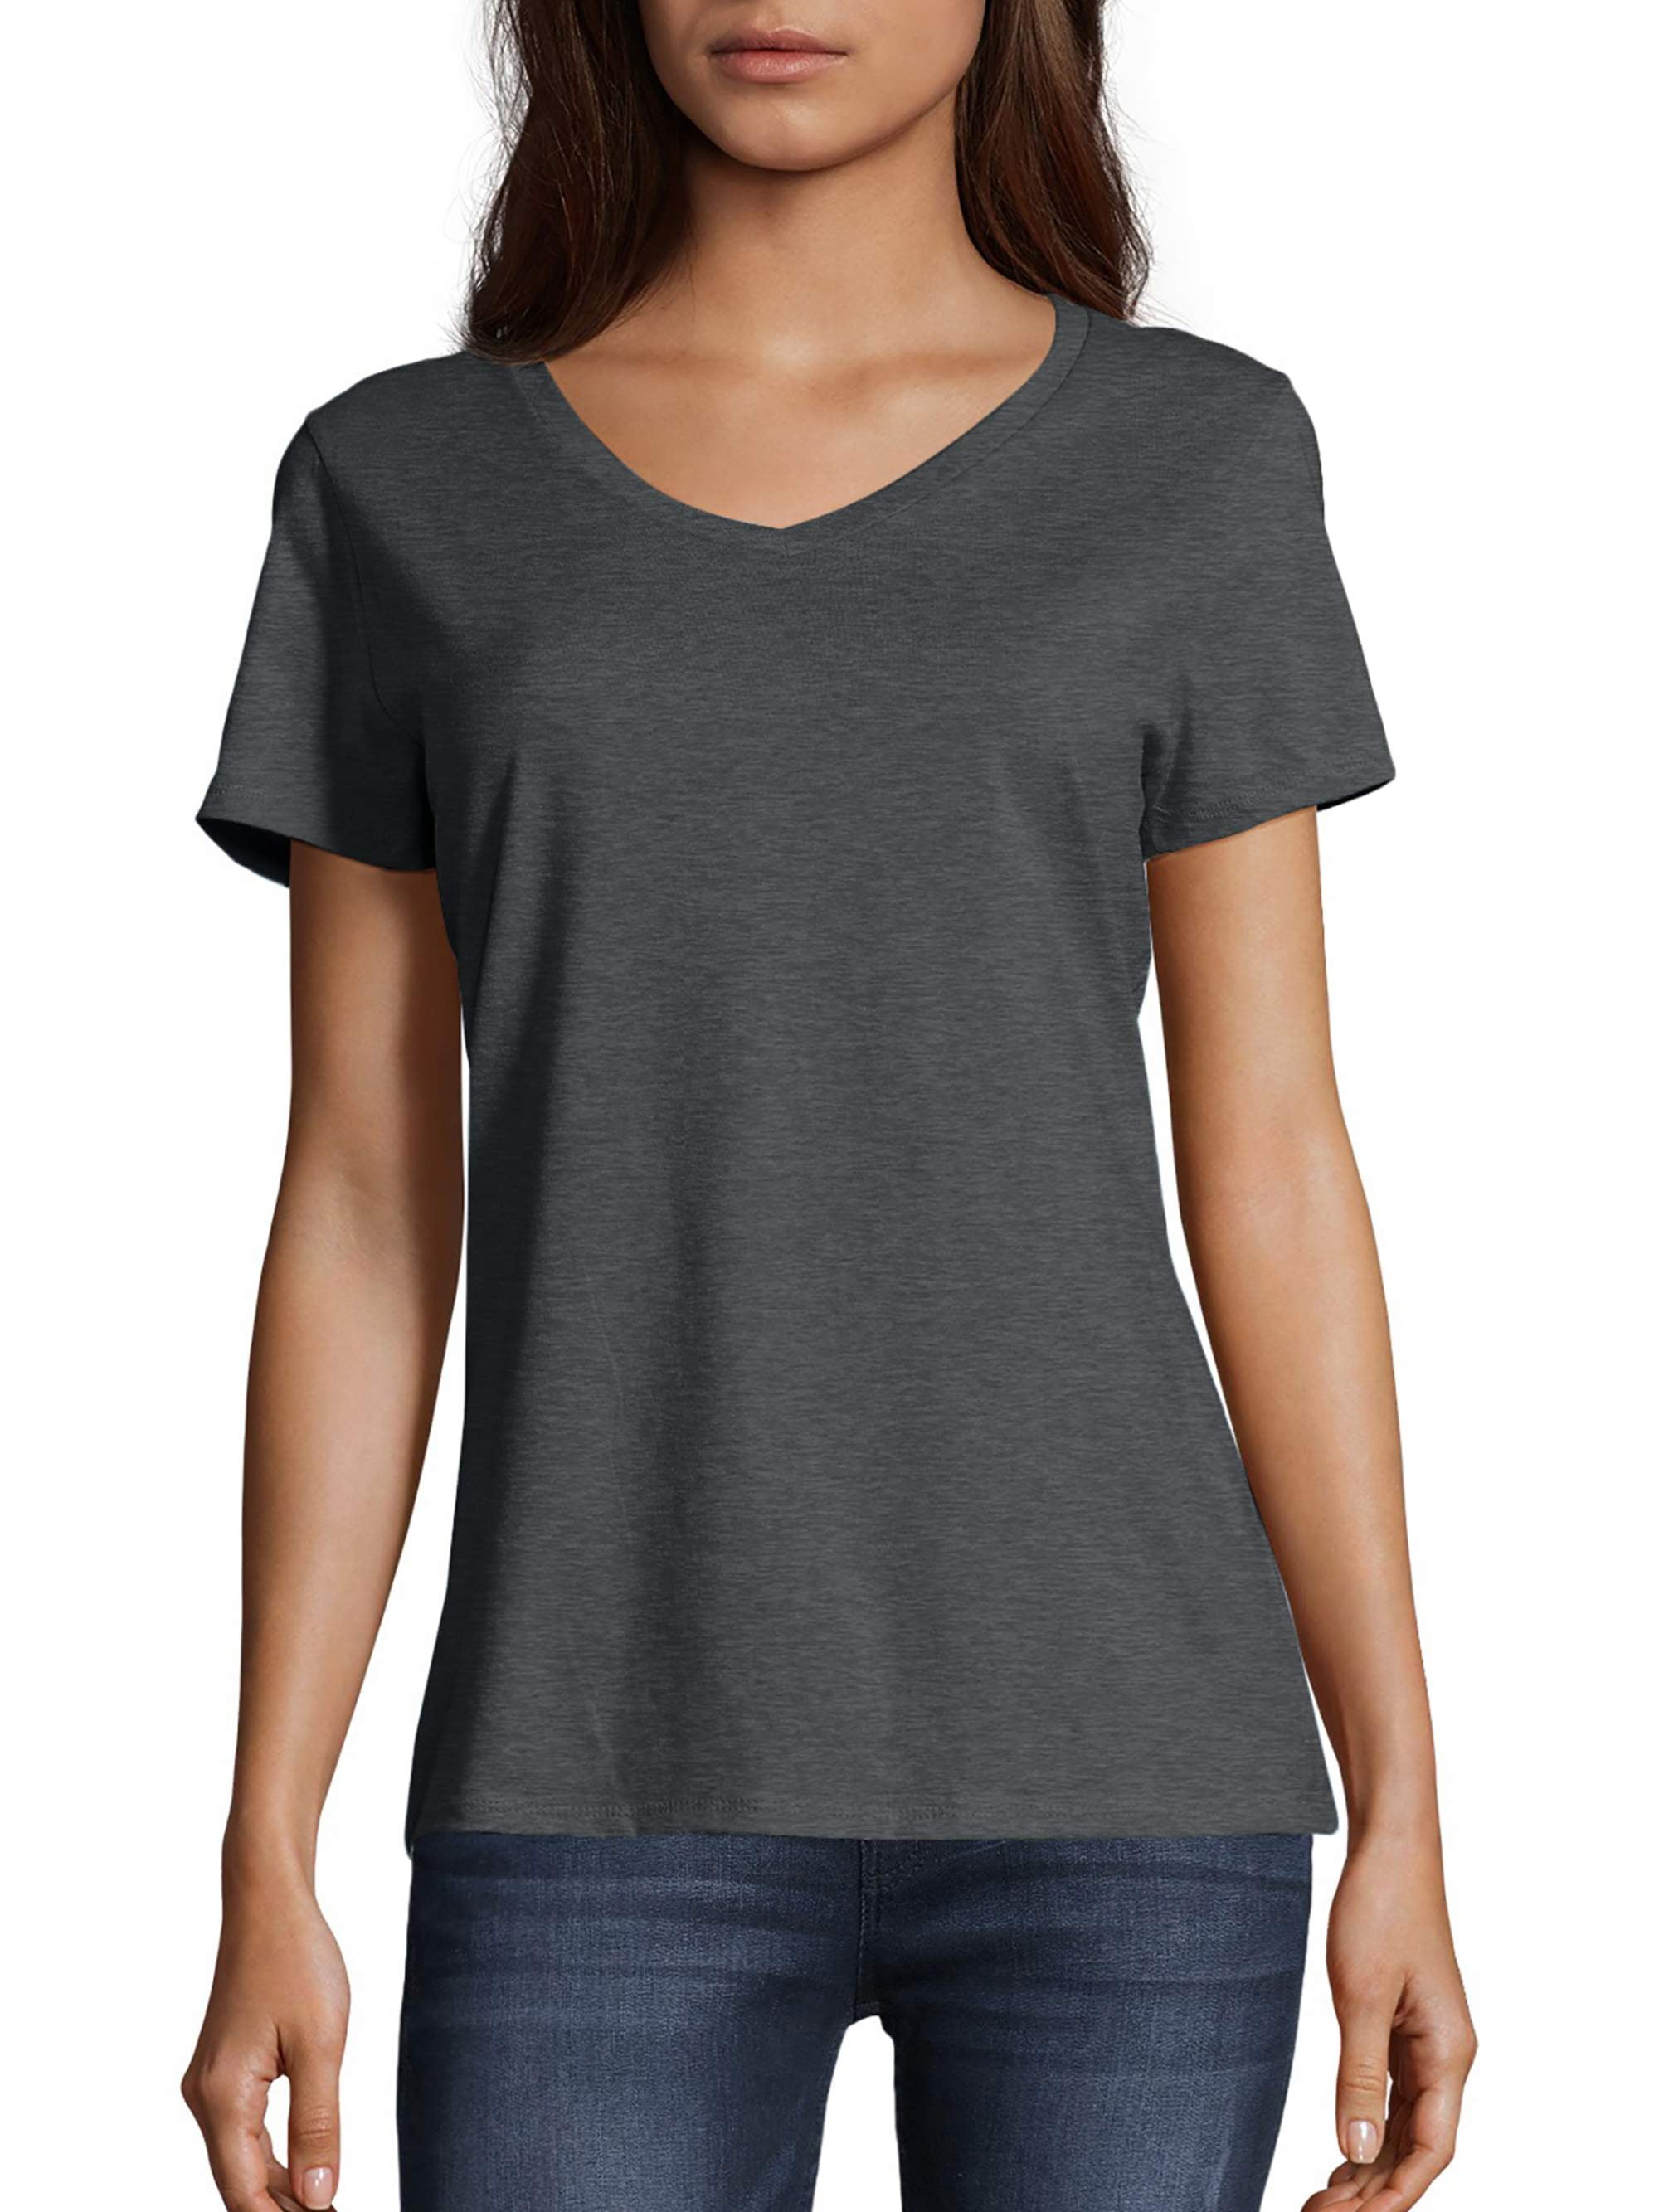 Hanes Women's Lightweight Short Sleeve V-neck T-shirt - Walmart.com